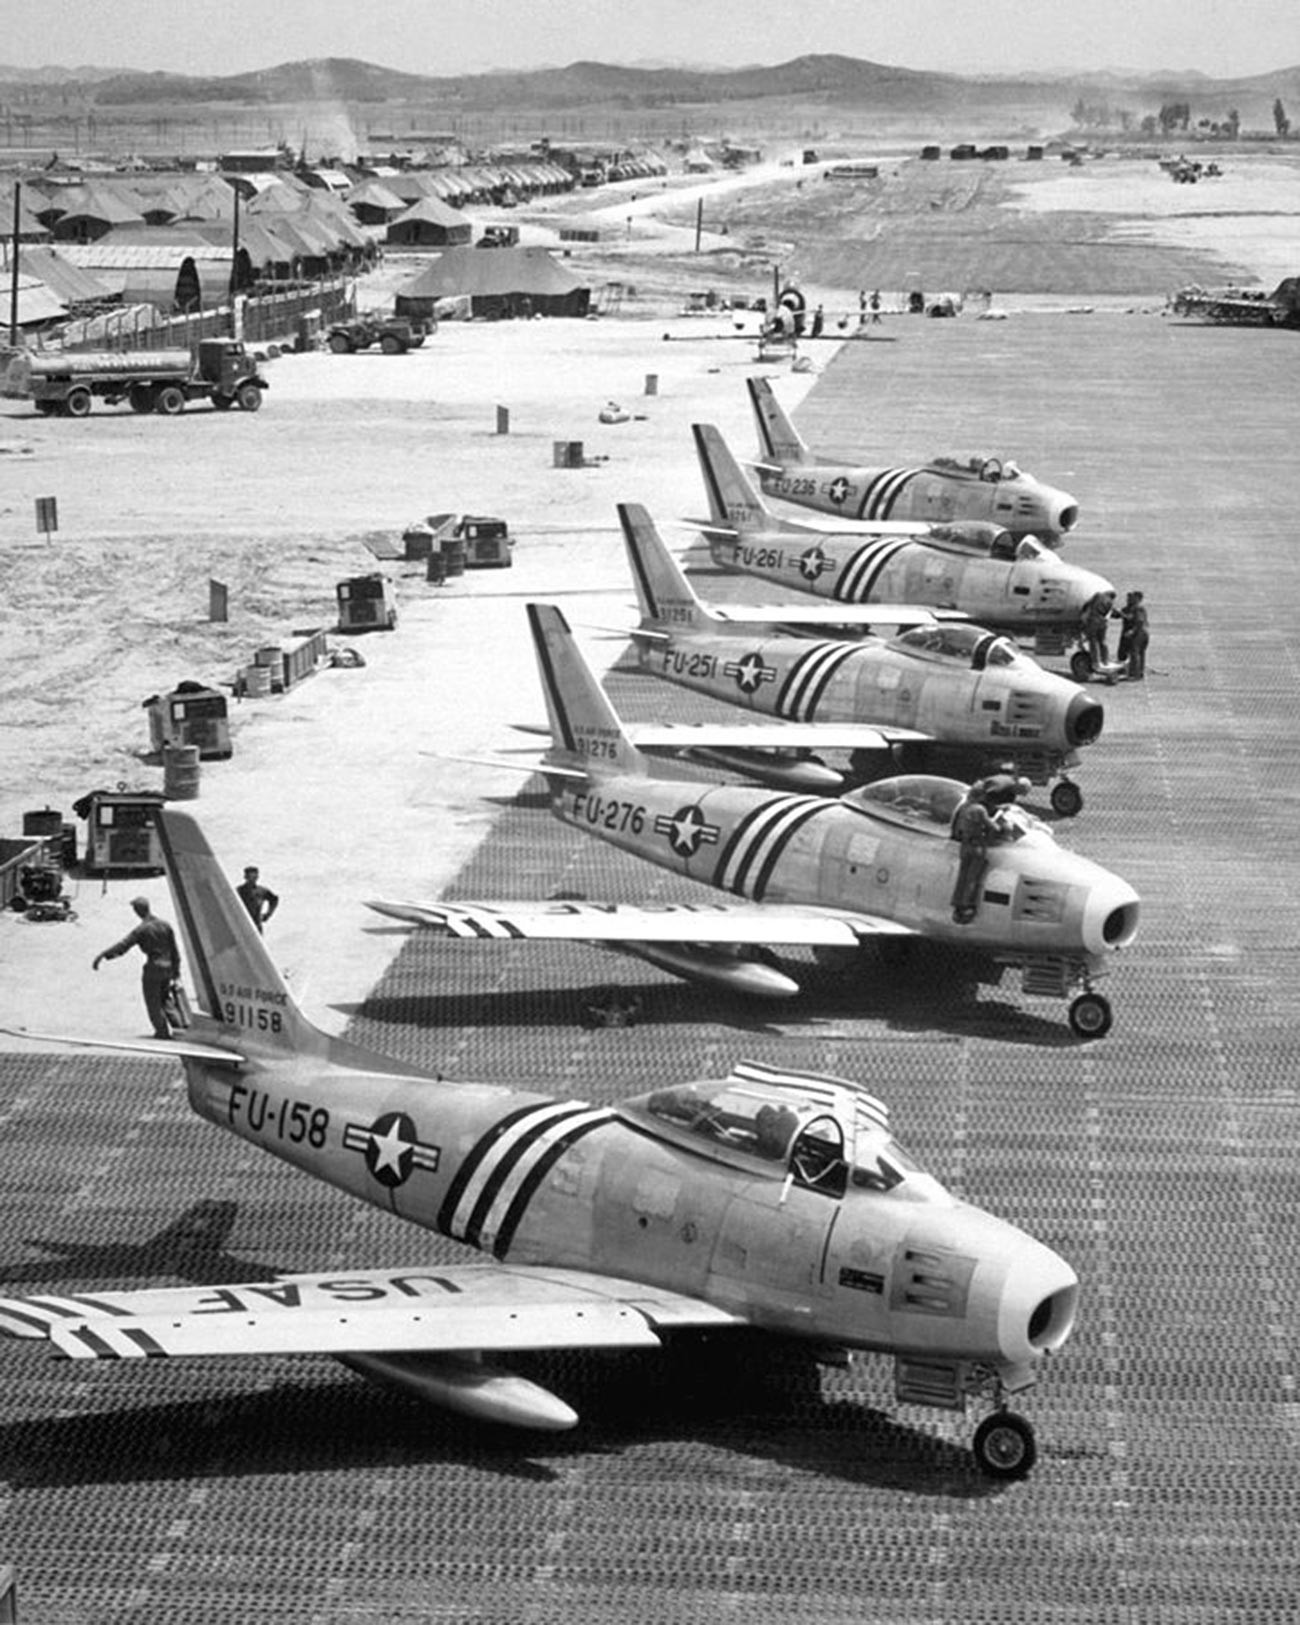 Vista de los aviones F-86 en la línea de vuelo preparándose para el combate.
